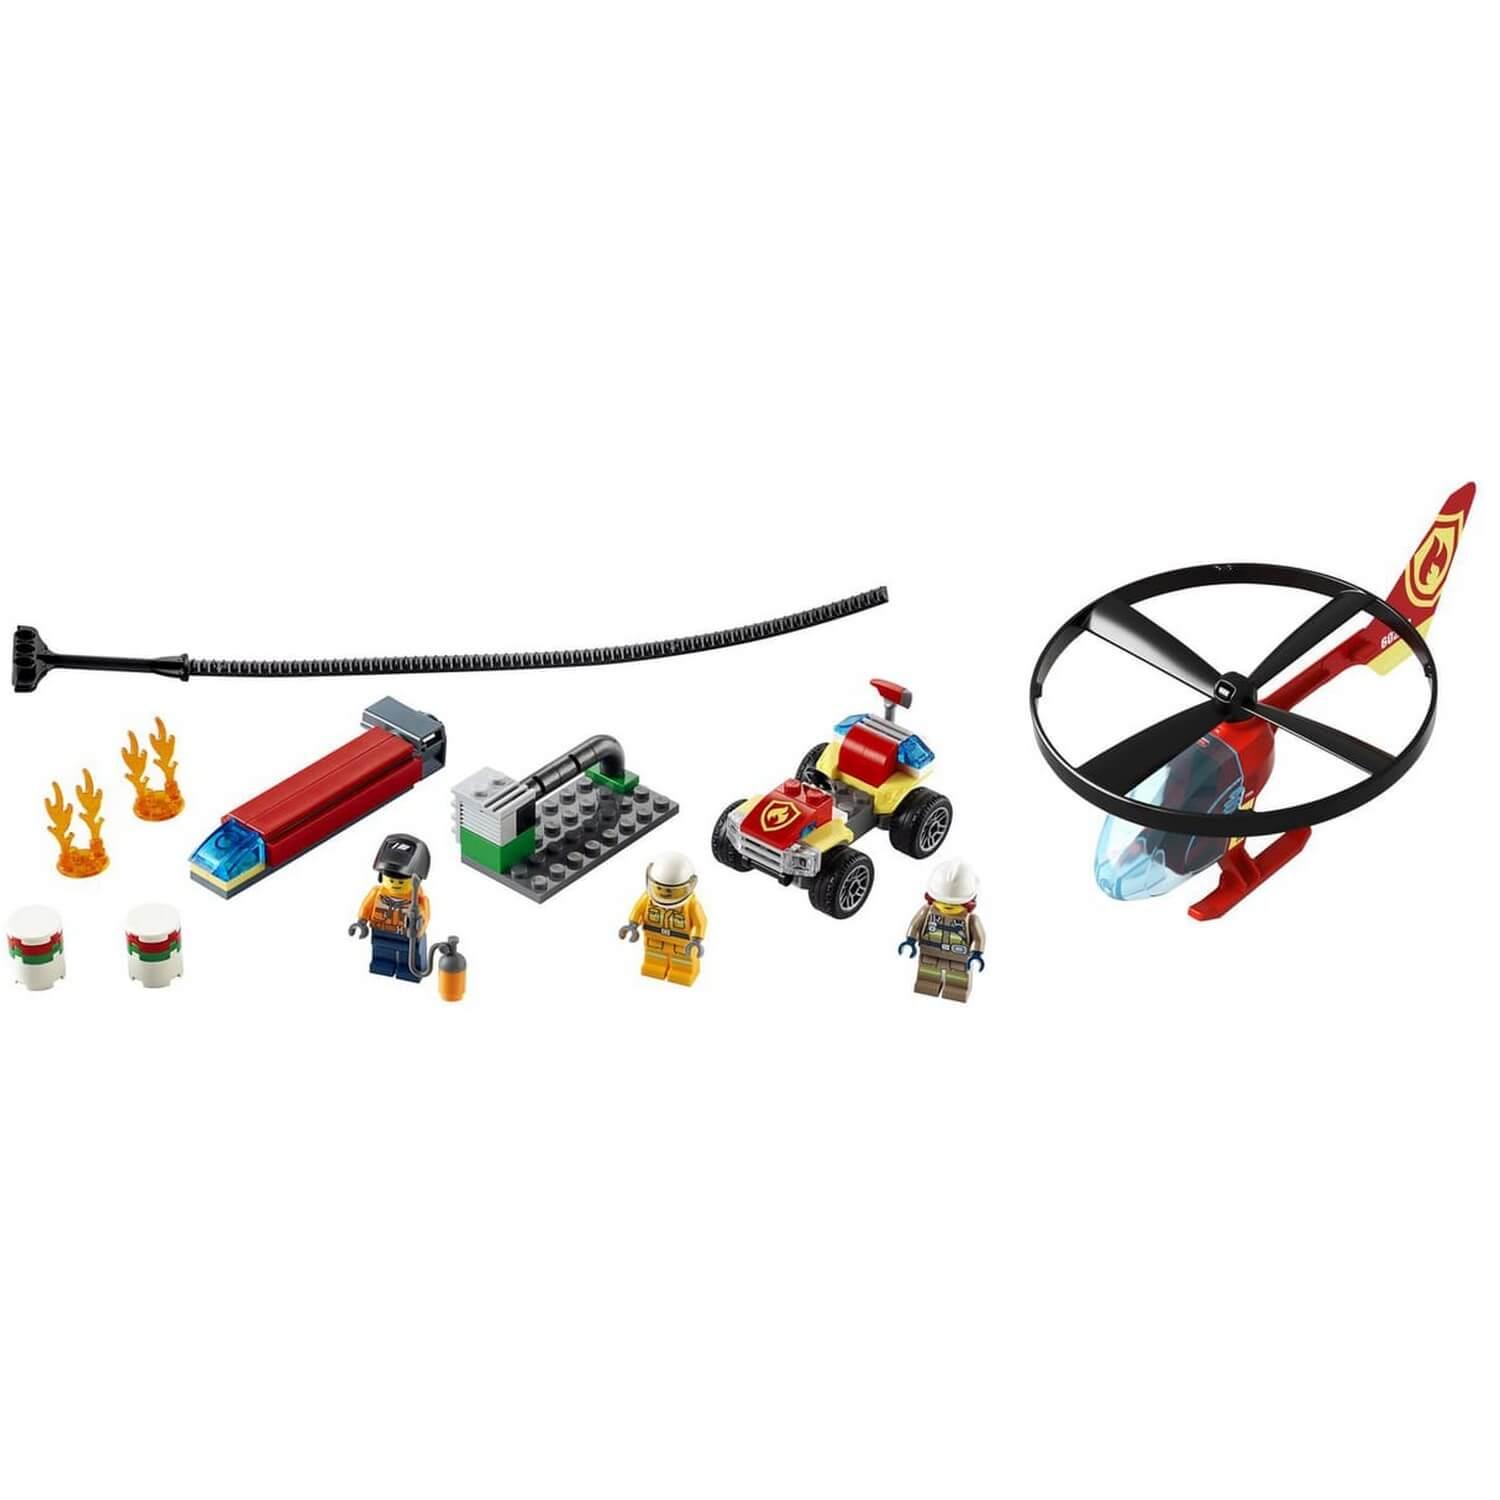 L'hélicoptère des pompiers LEGO City - Dès 4 ans 